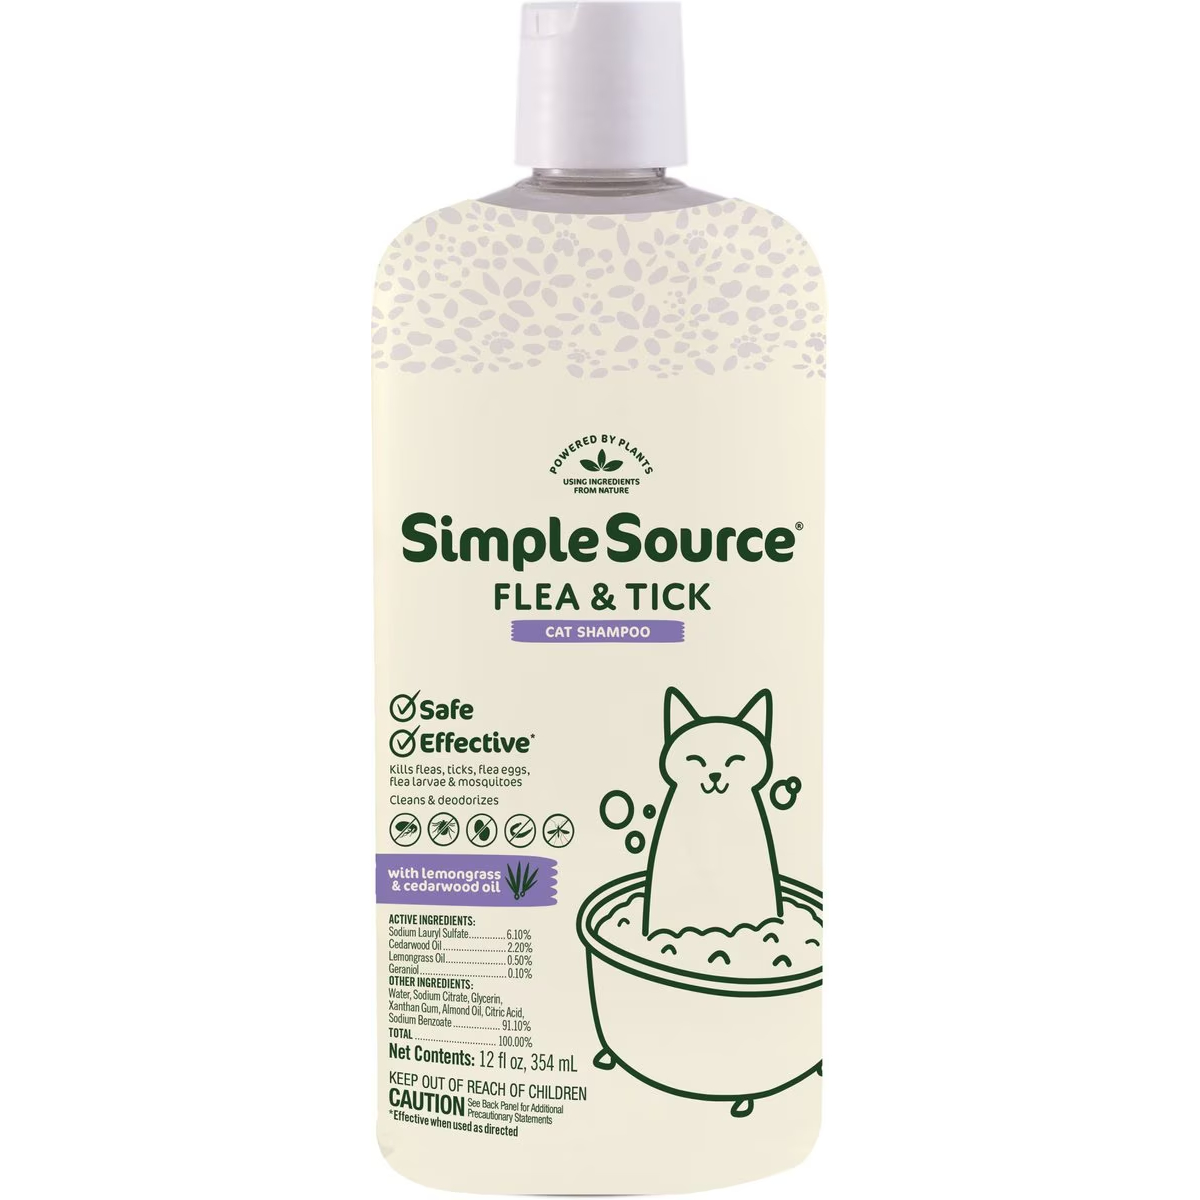 SimpleSource Flea & Tick Cat Shampoo